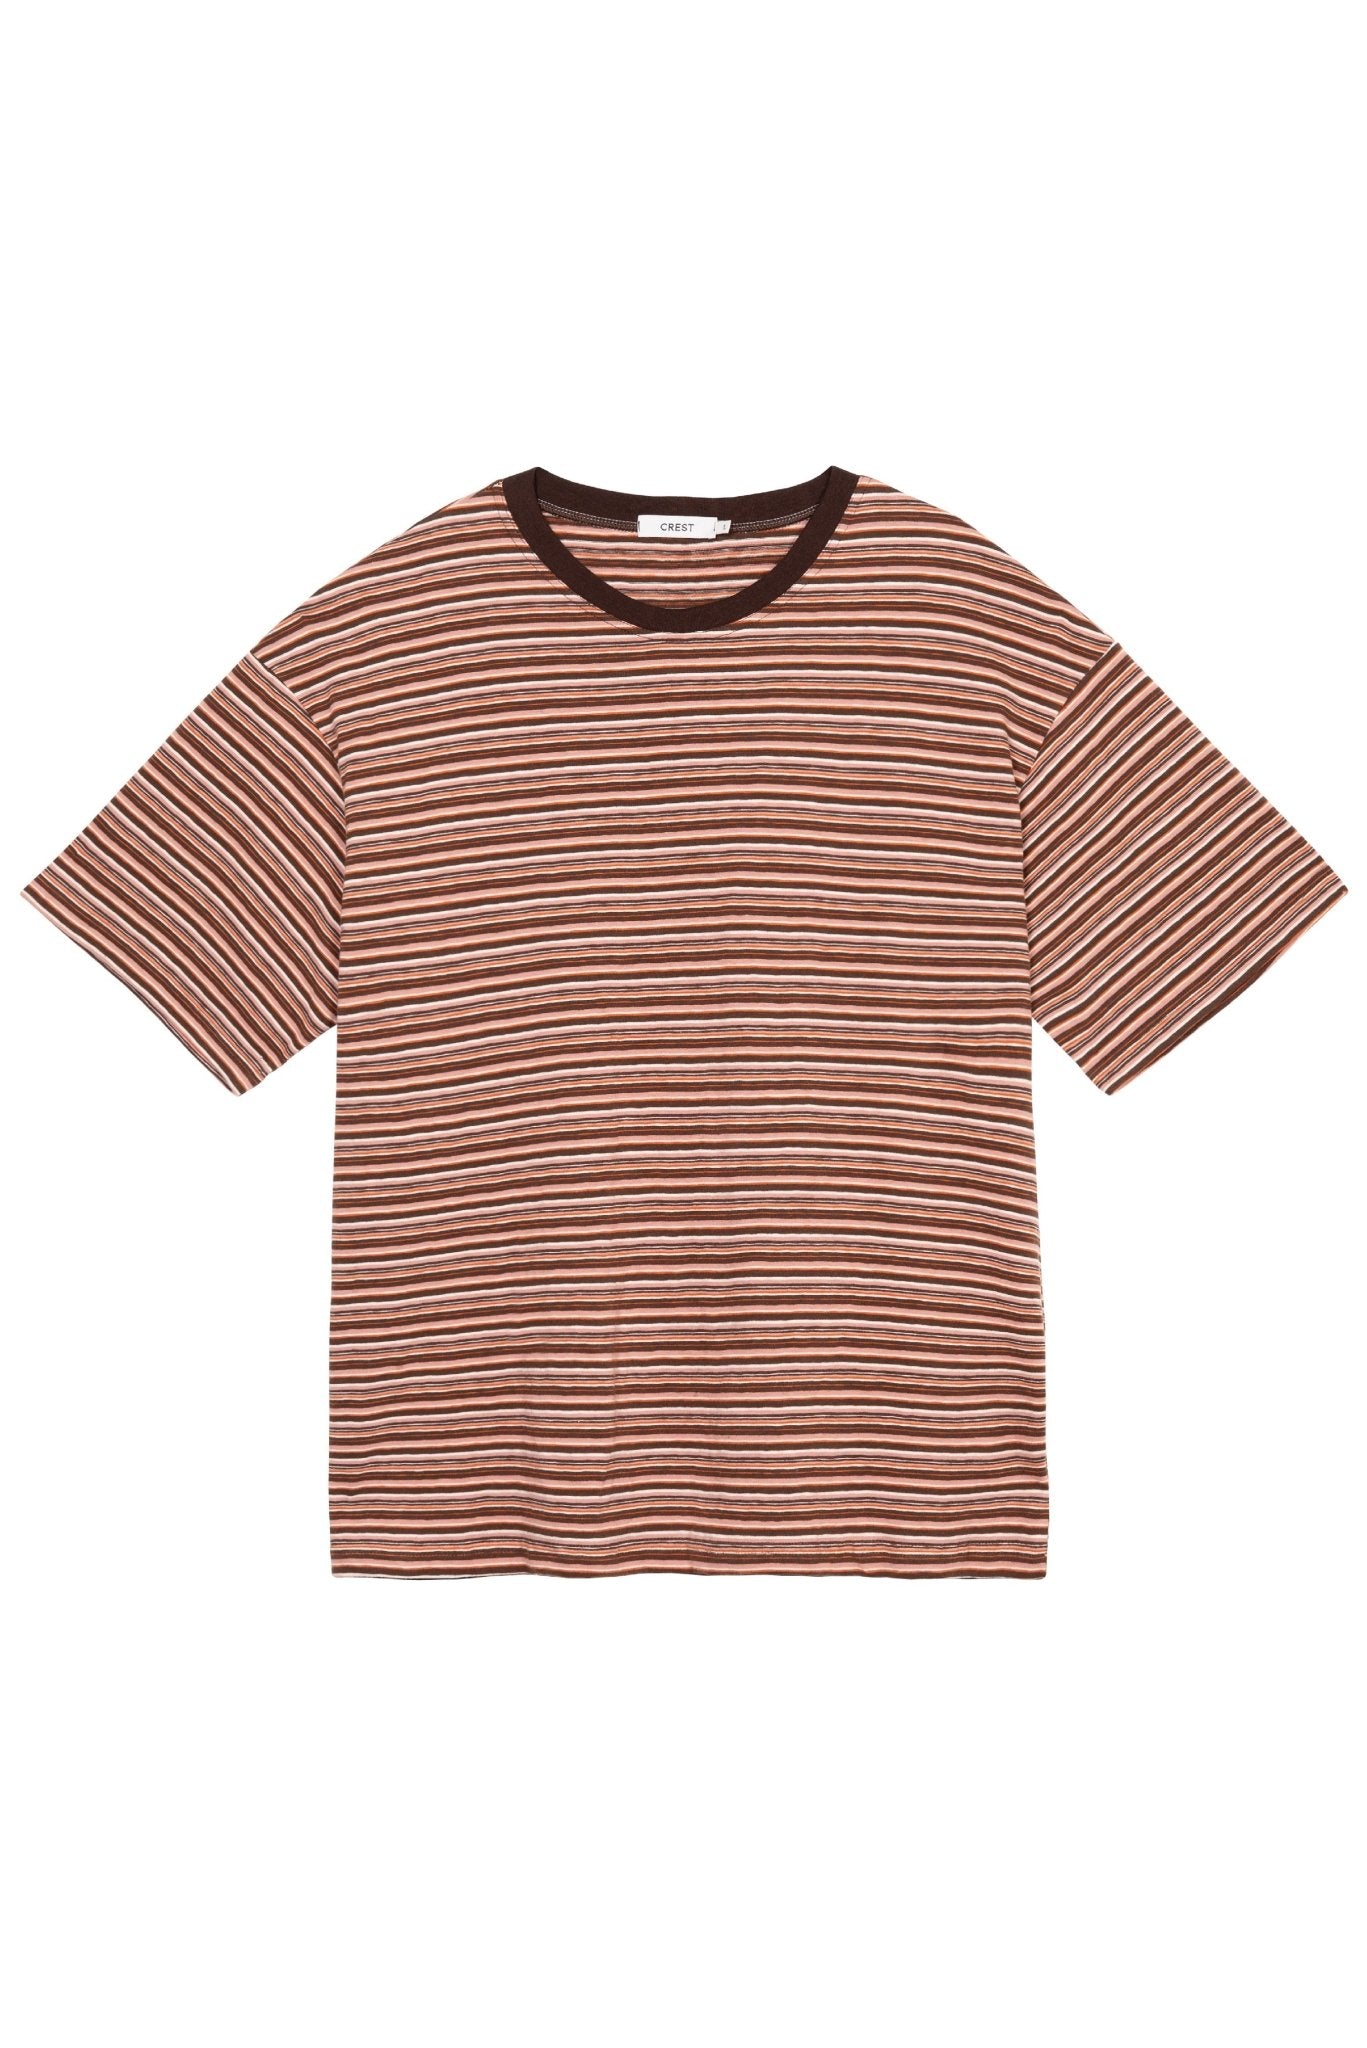 CREST - Comodo Striped T-Shirt | Brick